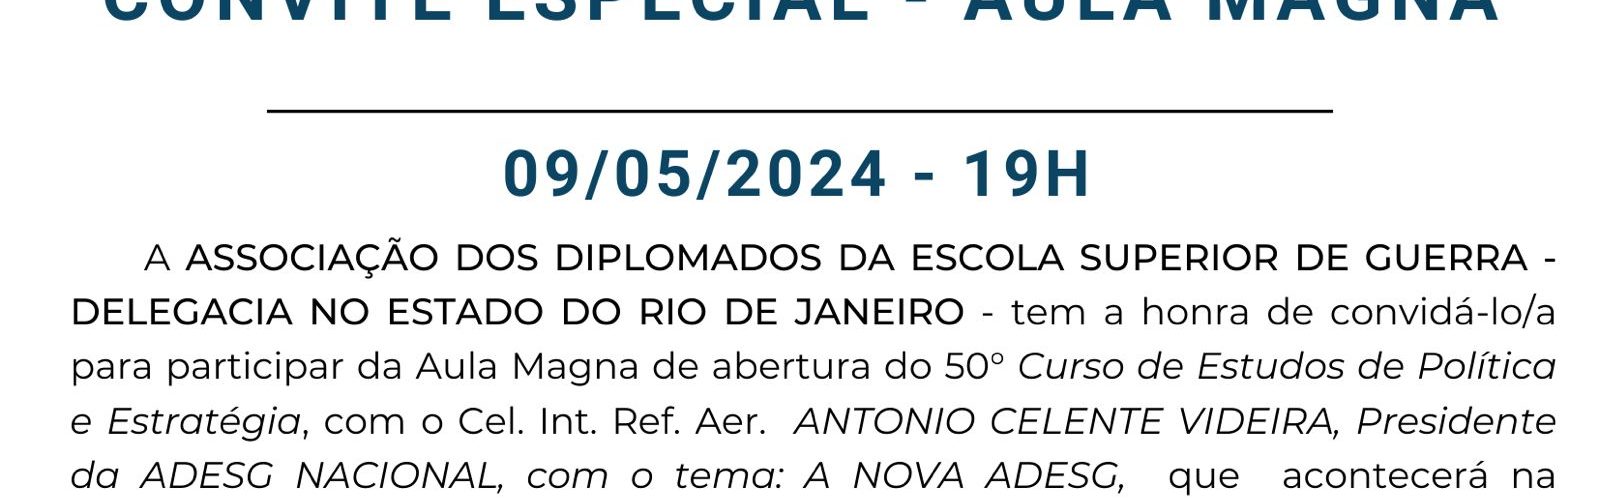 ADESG RIO DE JANEIRO – CONVITE ESPECIAL – AULA MAGNA